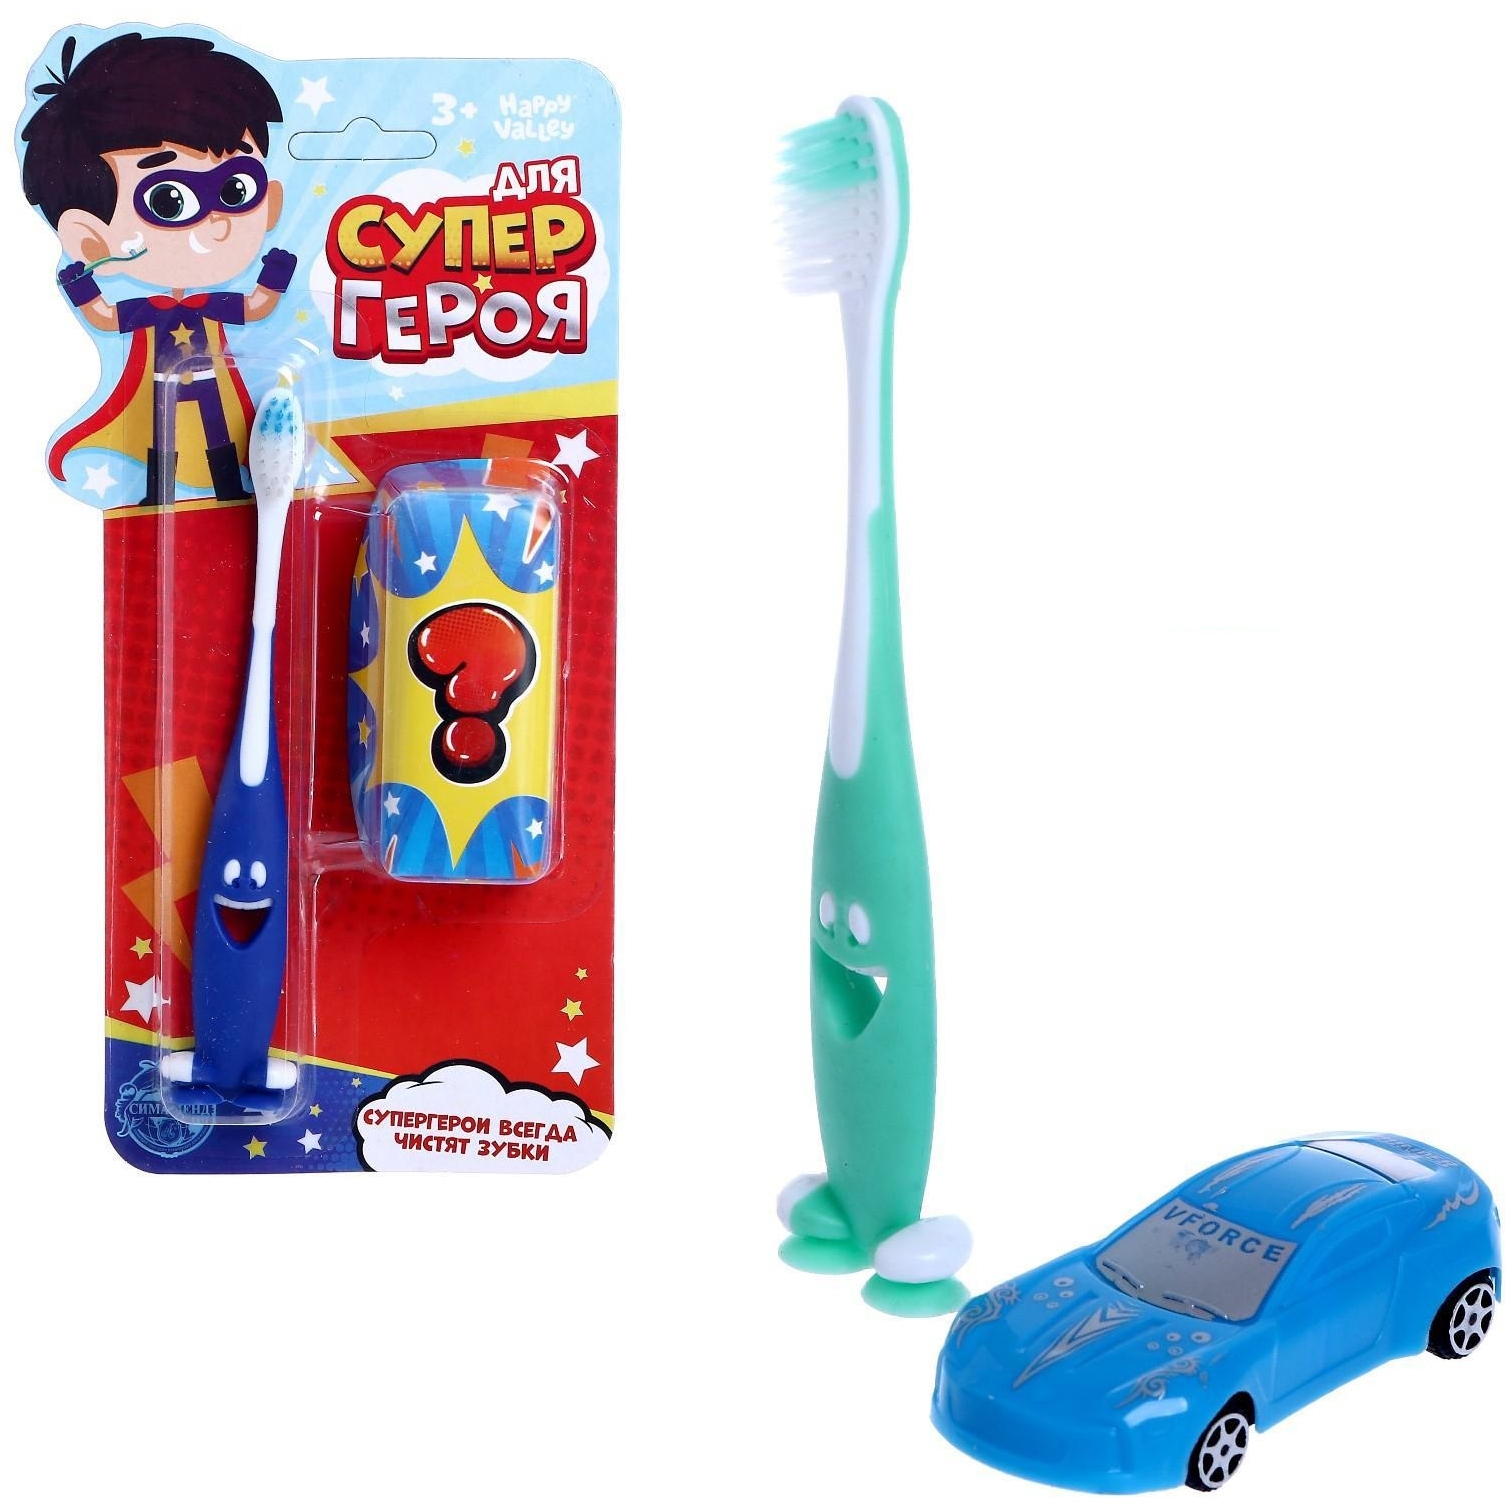 Зубная щетка "Для супер героя" (с игрушкой сюрприз) 4826352